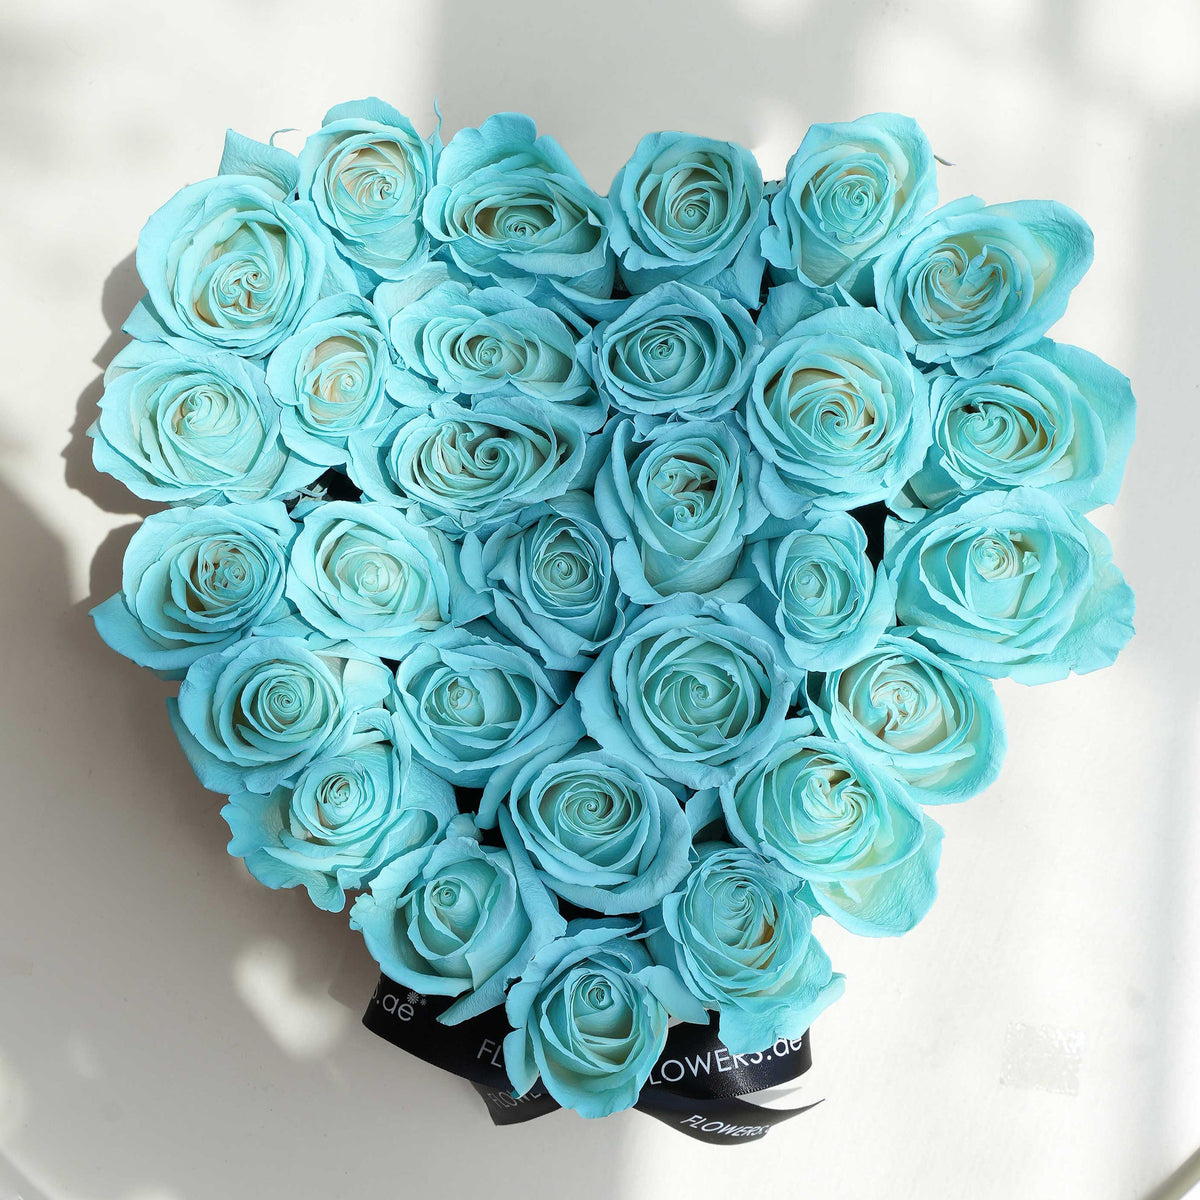 Anniversary Tiffany Blue Heart